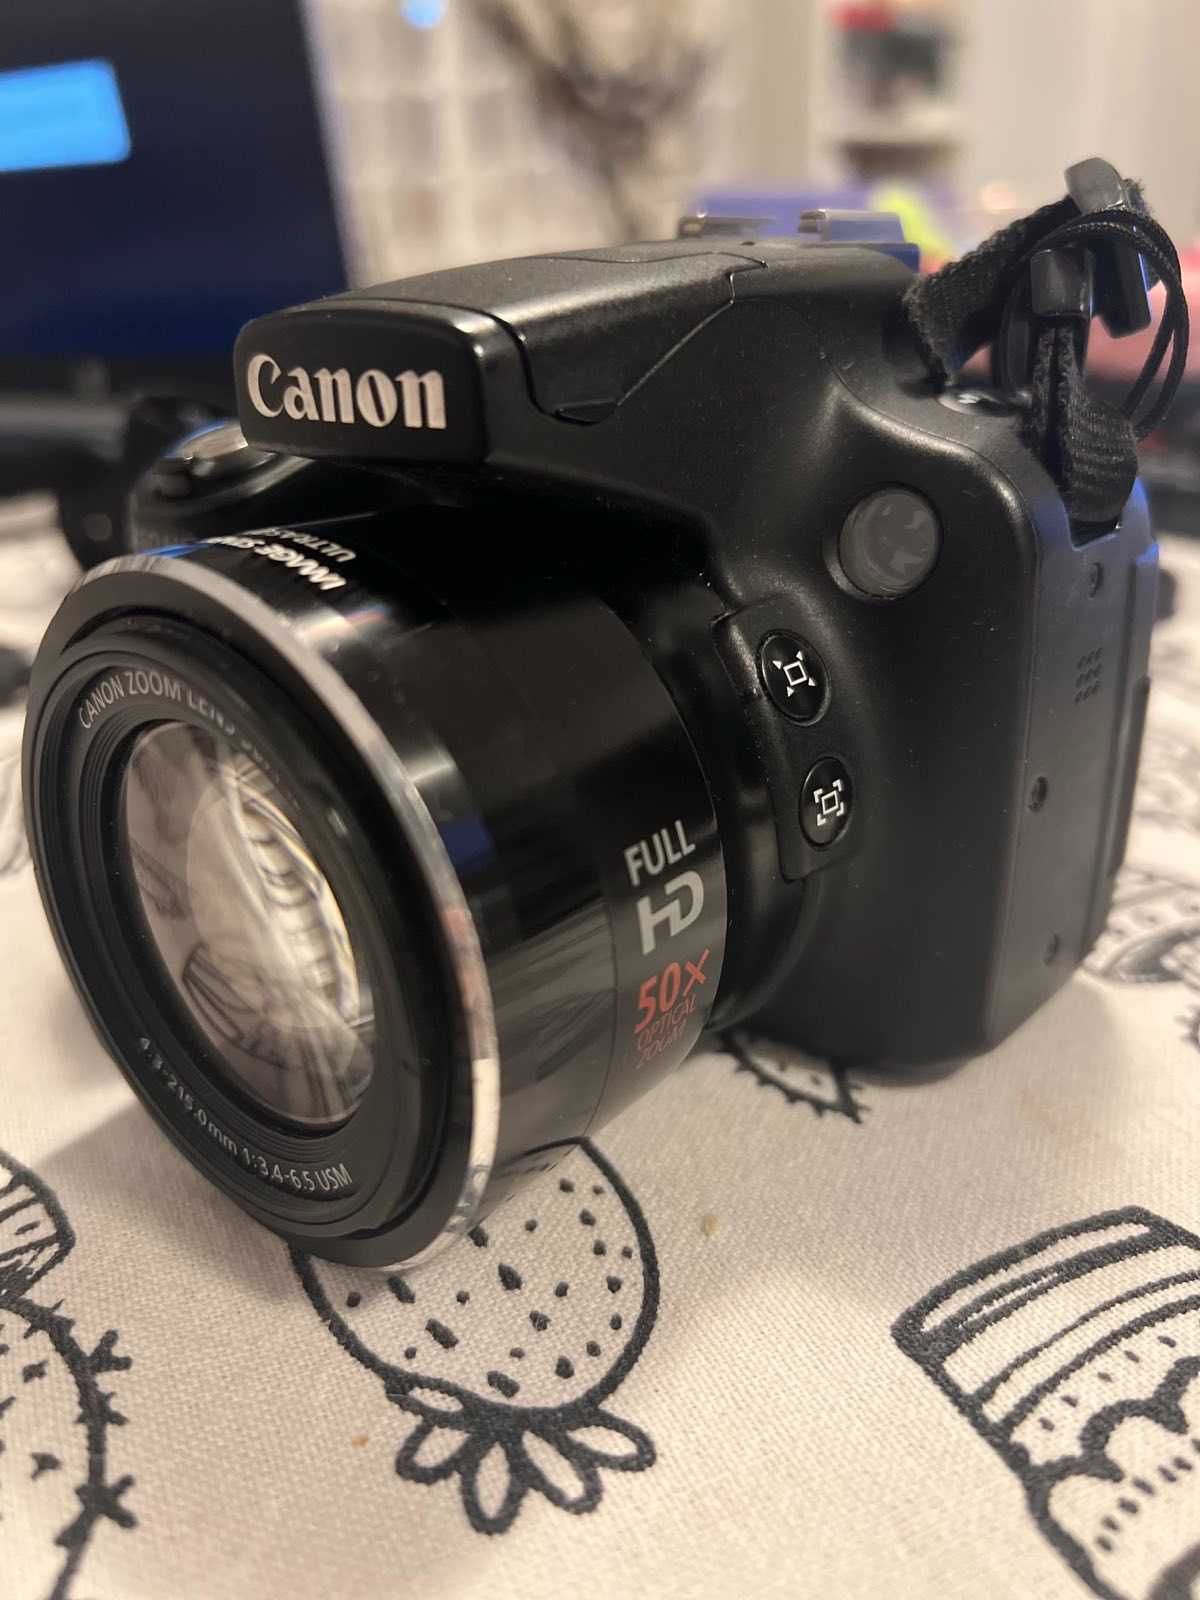 Фотоапарат Canon SX50HS